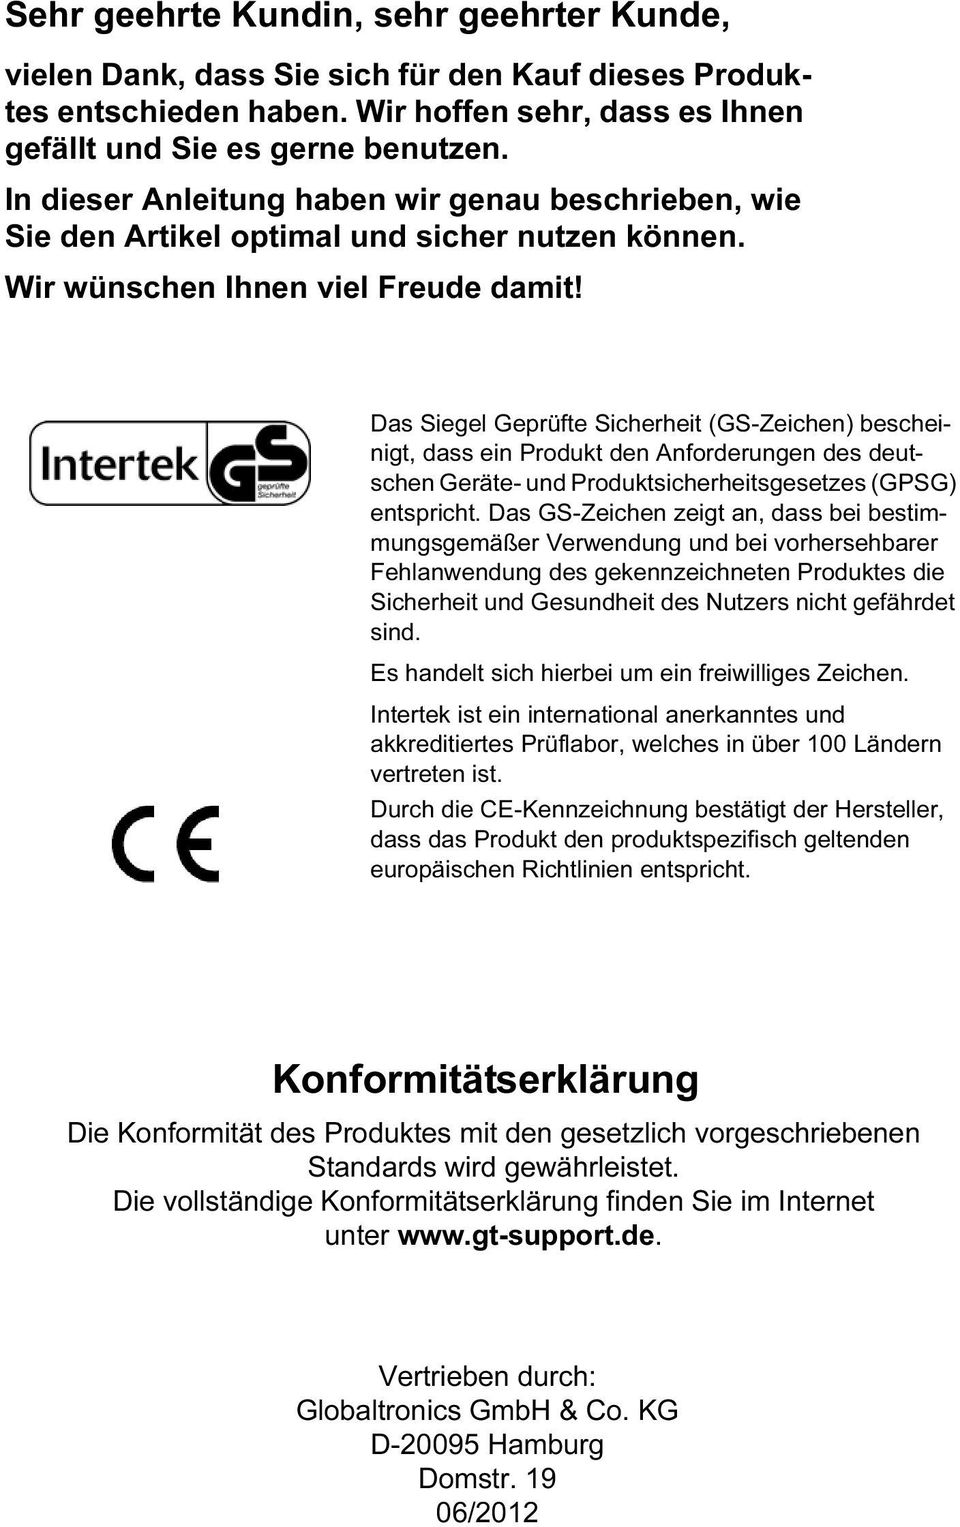 Das Siegel Geprüfte Sicherheit (GS-Zeichen) bescheinigt, dass ein Produkt den Anforderungen des deutschen Geräte- und Produktsicherheitsgesetzes (GPSG) entspricht.